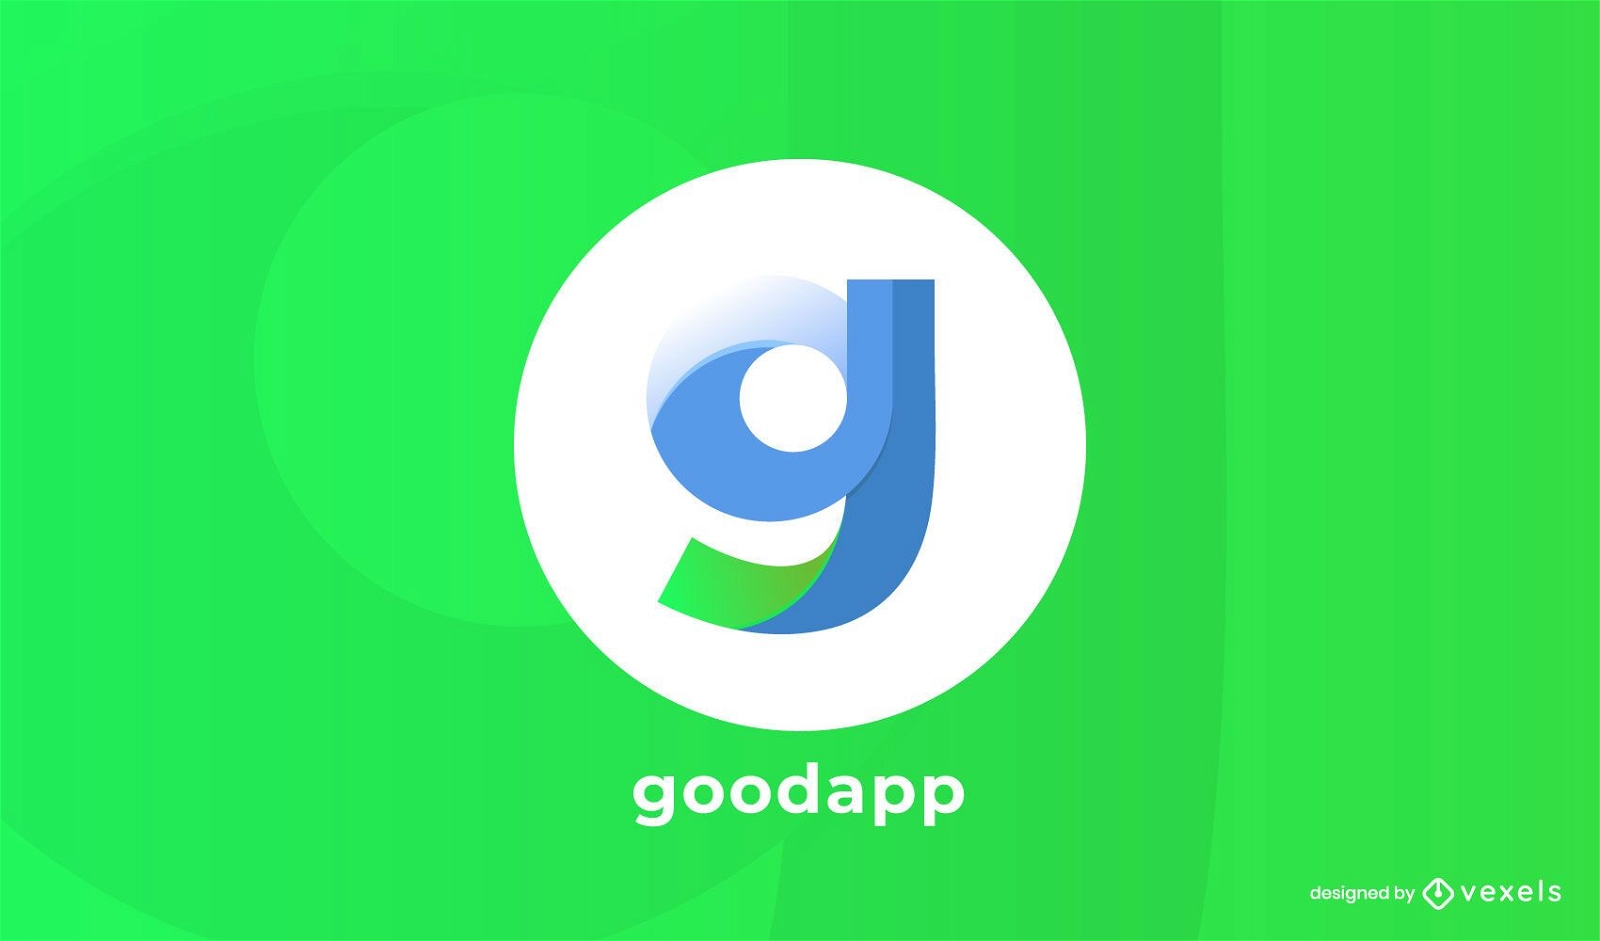 goodapp logo design